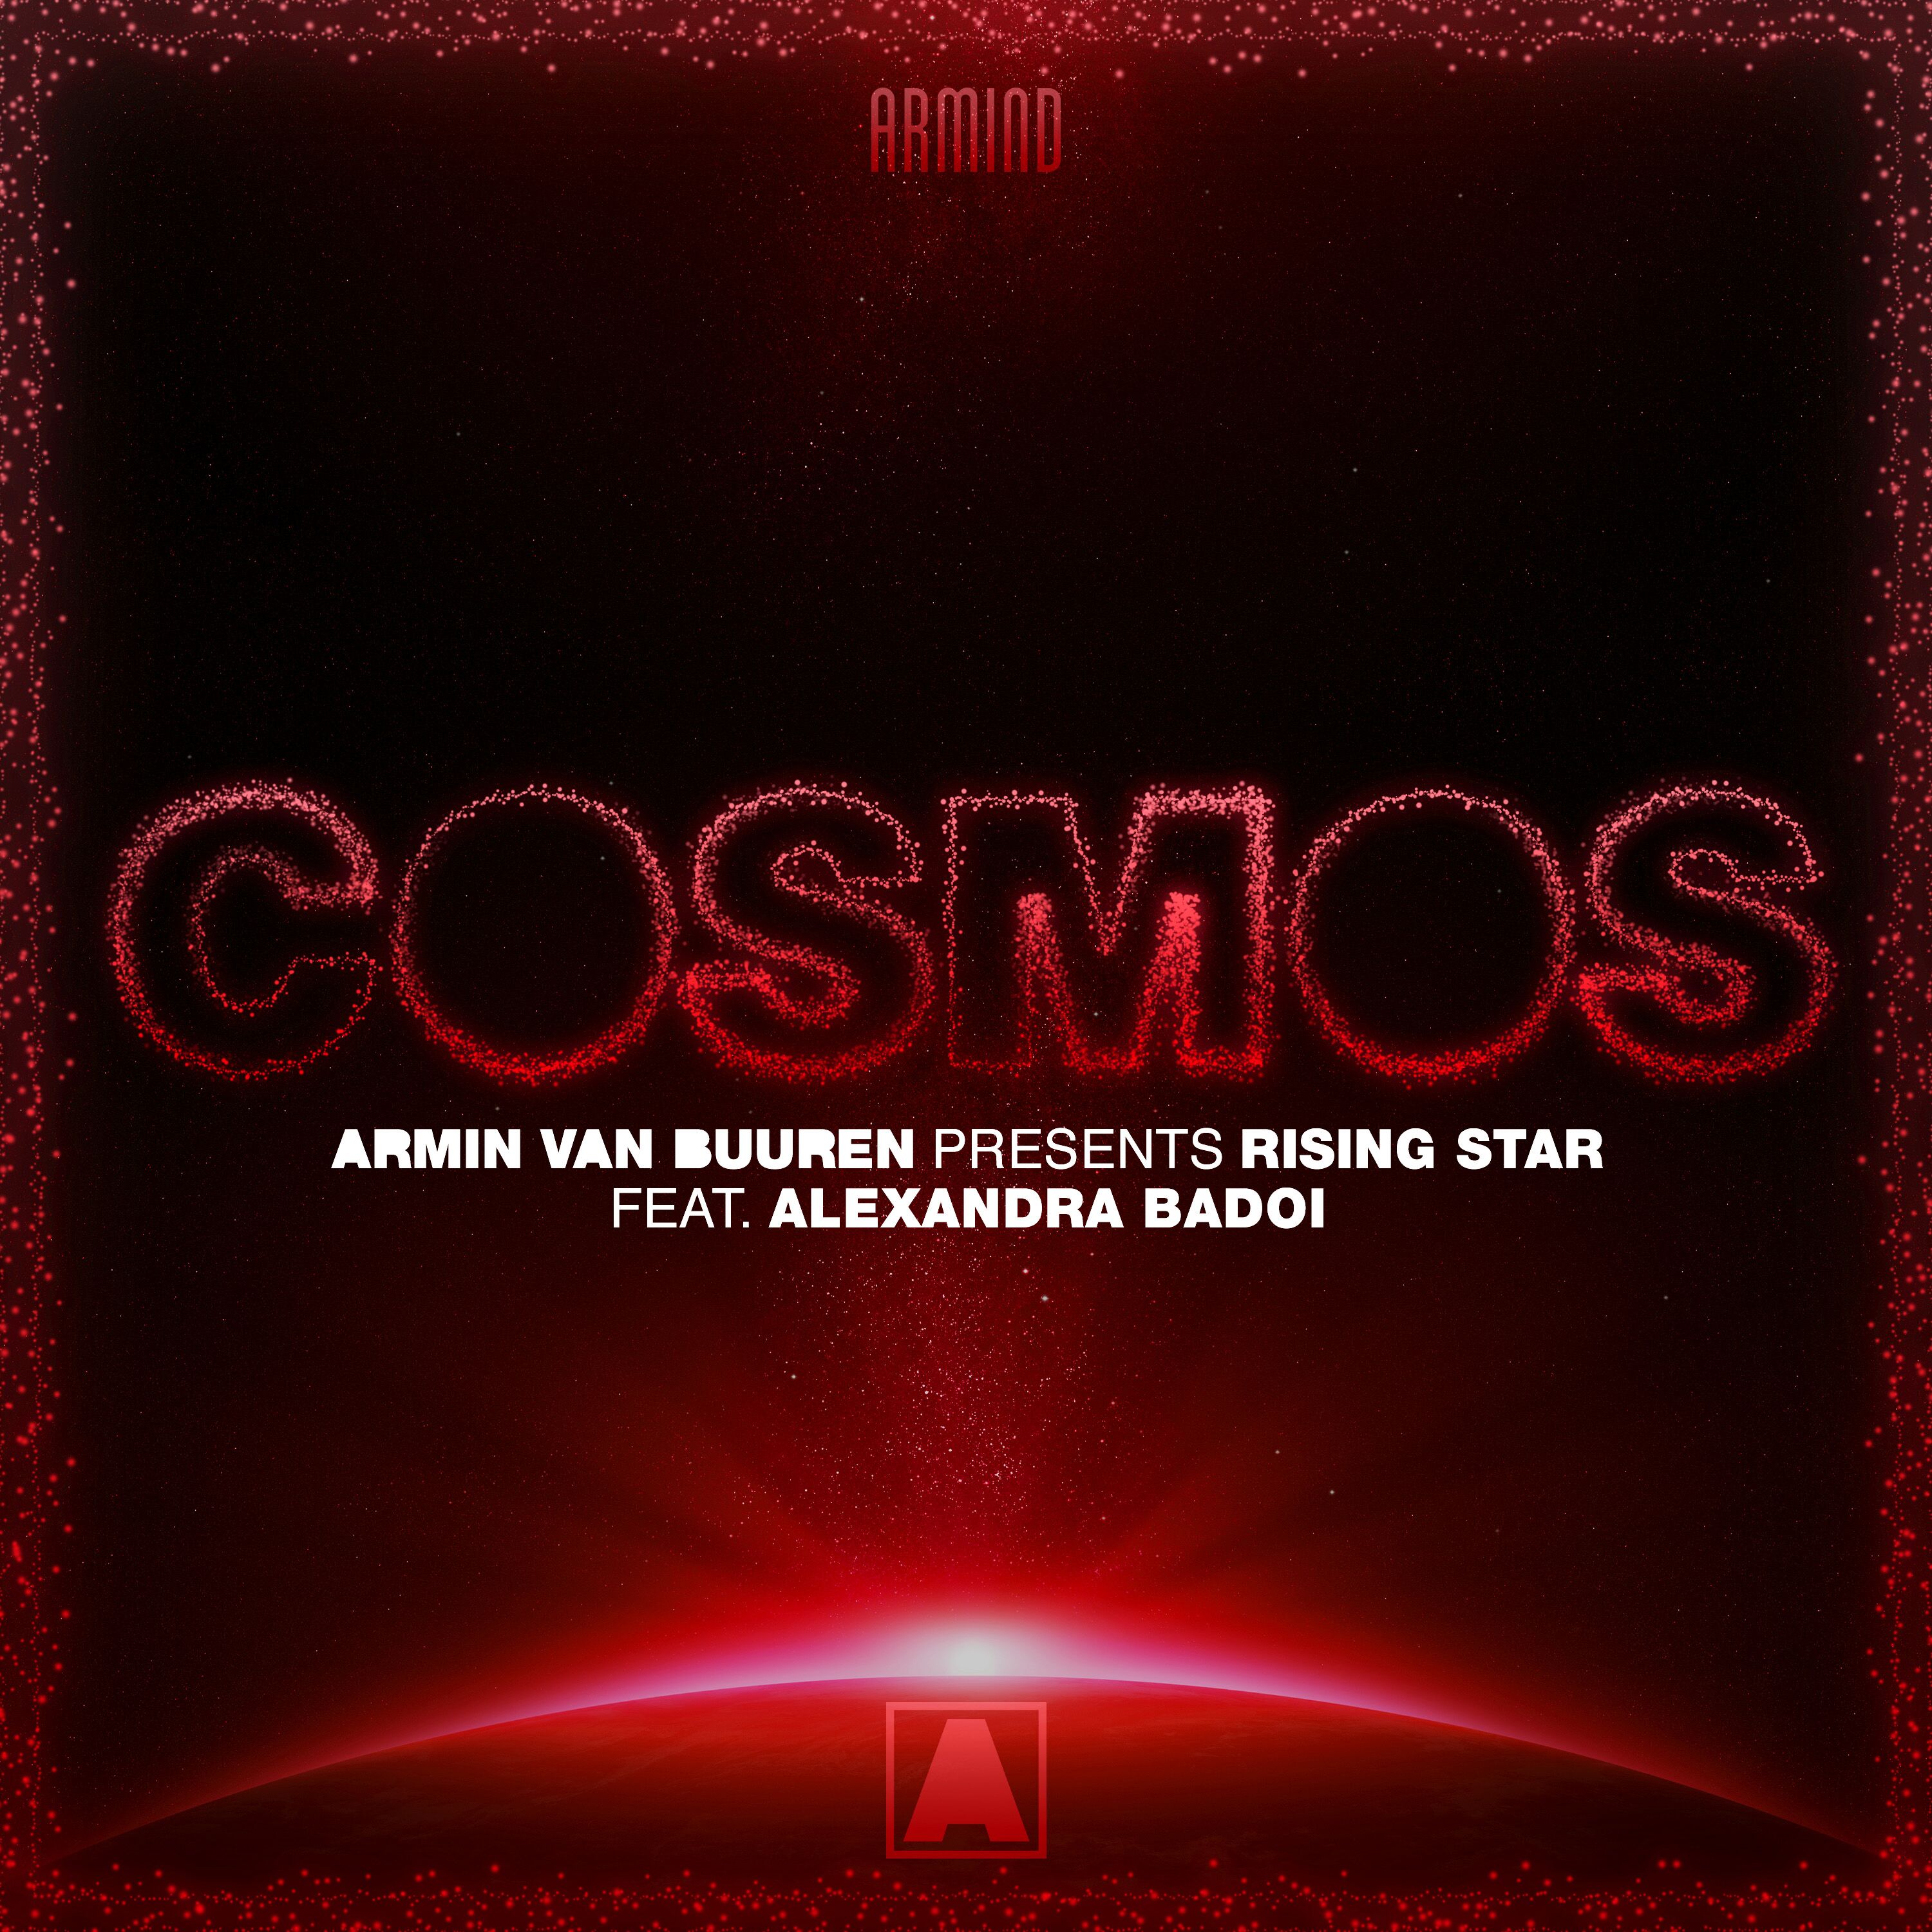 Armin van Buuren pres. Rising Star feat. Alexandra Badoi - Cosmos